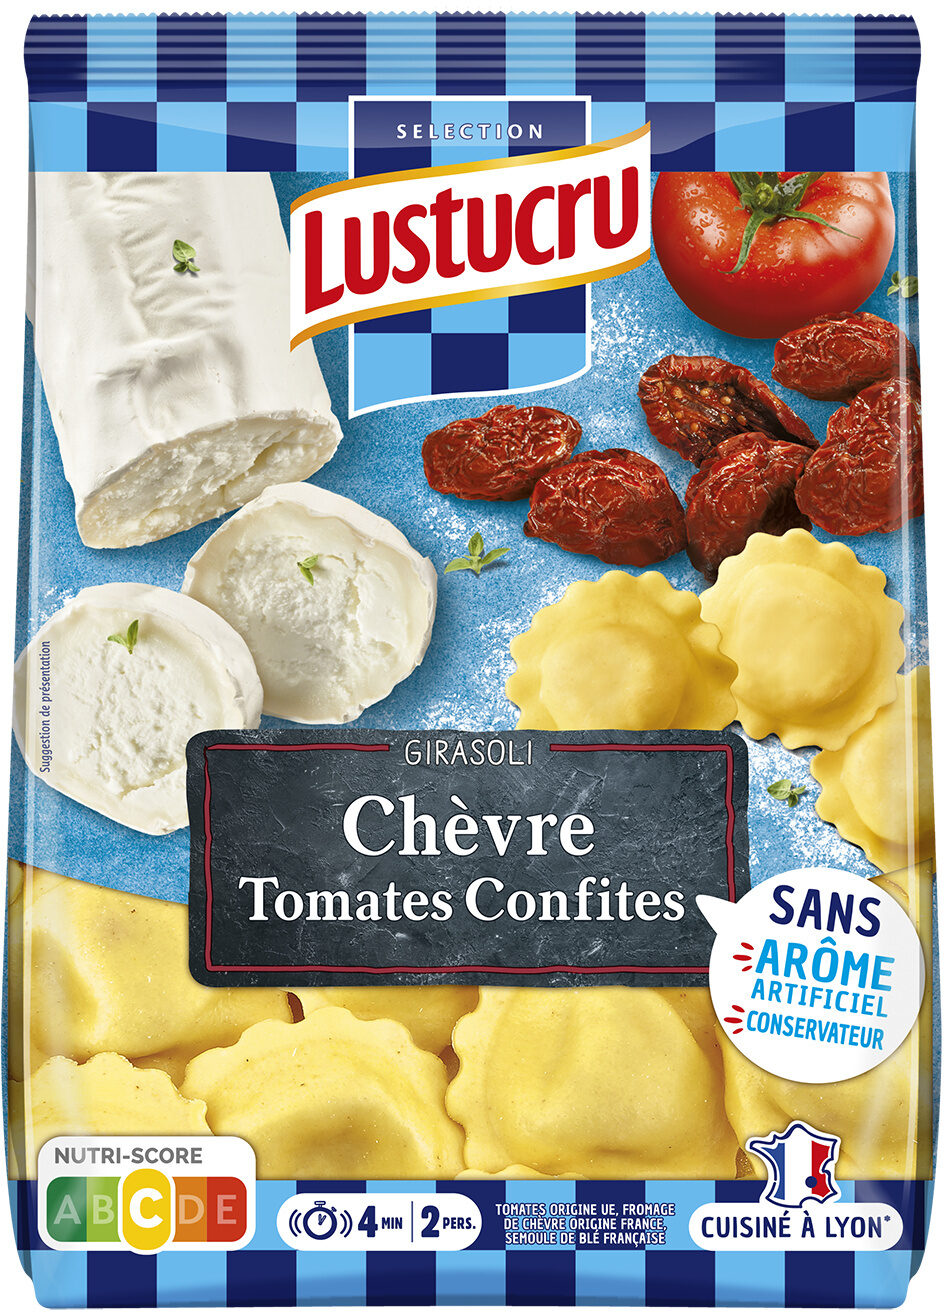 Chèvre tomates confites - Produkt - fr